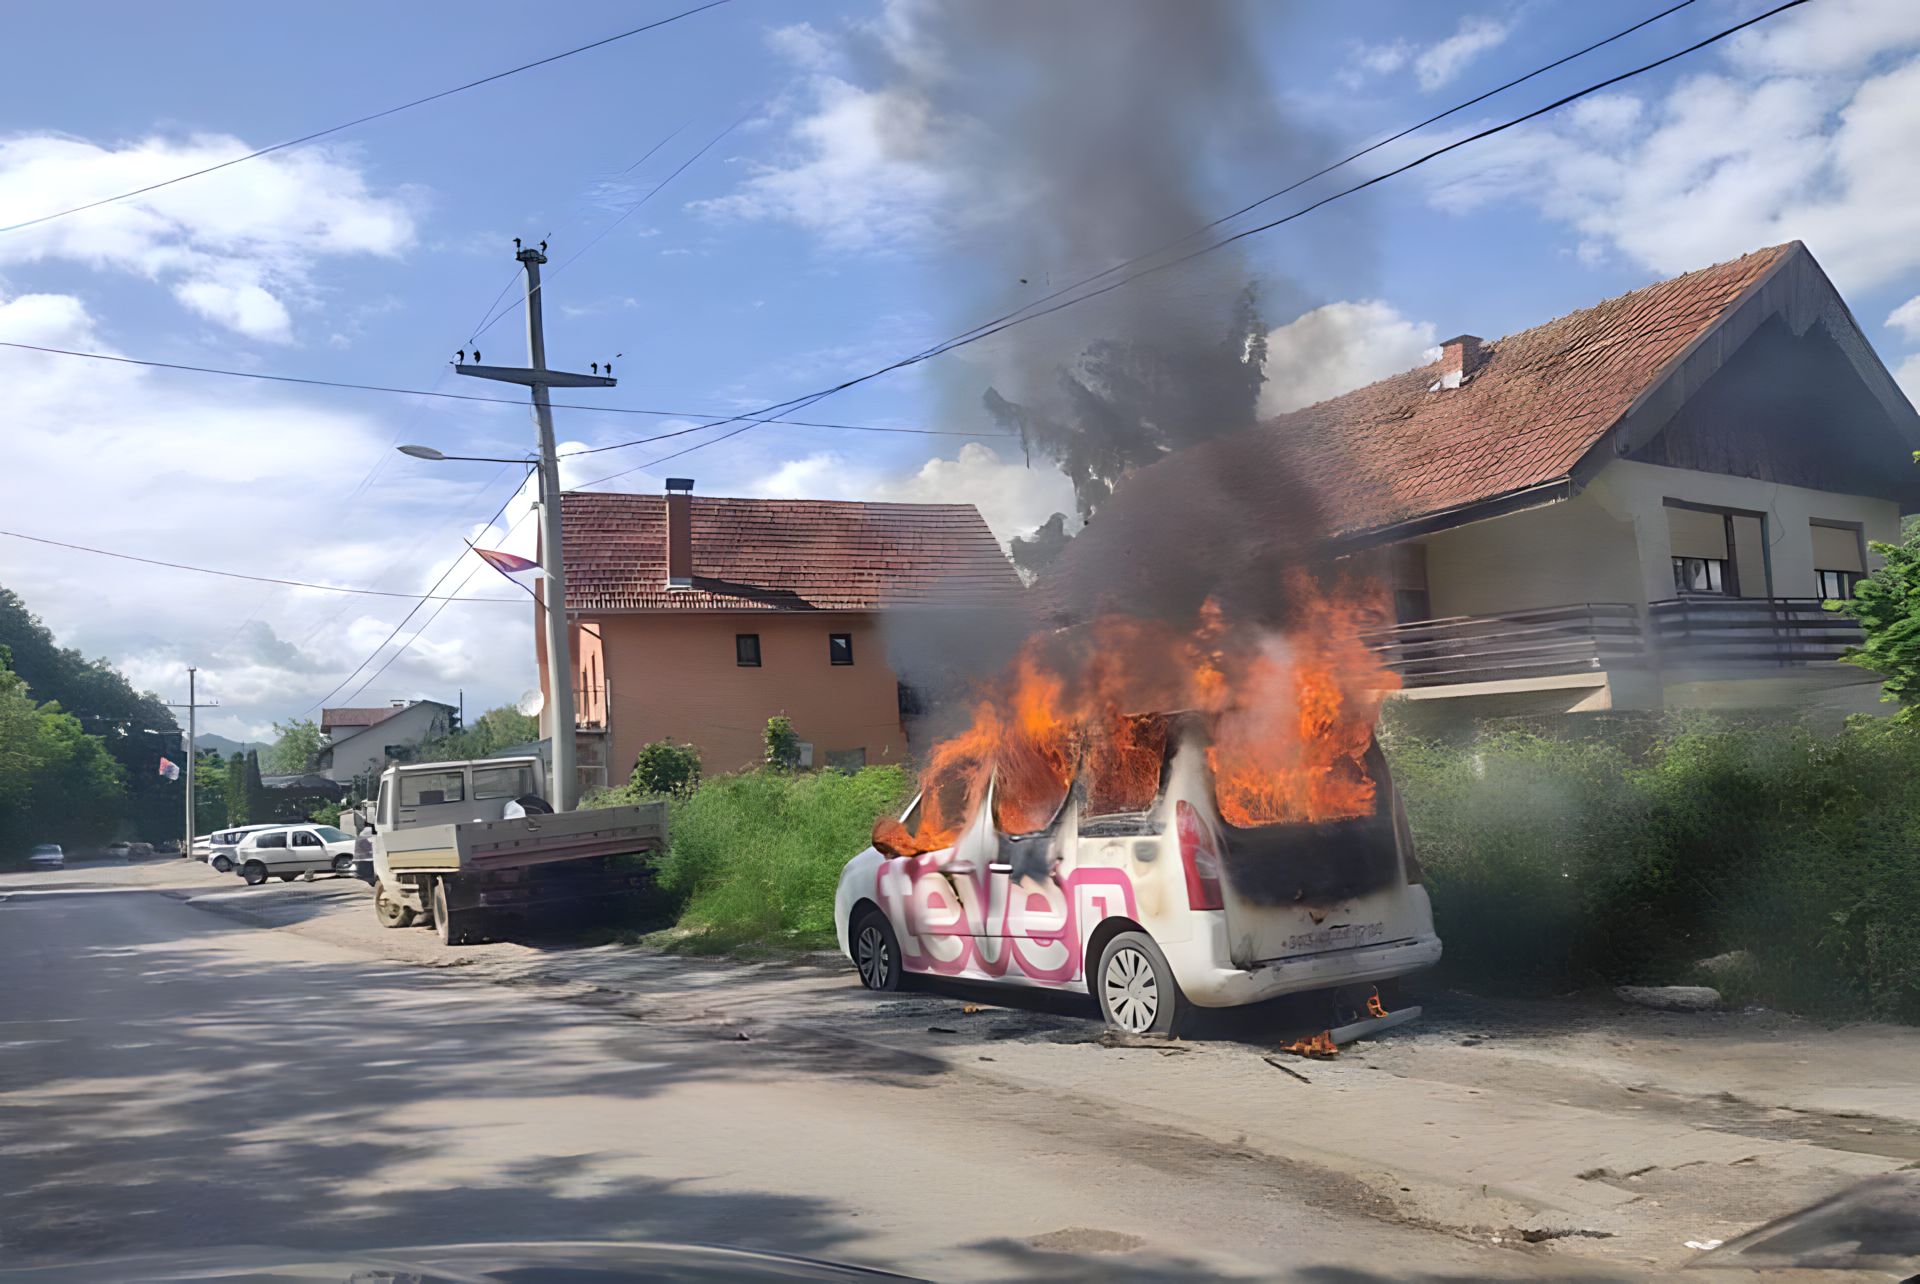 Është djegur automjeti i televizionit “TëVë1” gjatë raportimit nga Zubin Potoku.